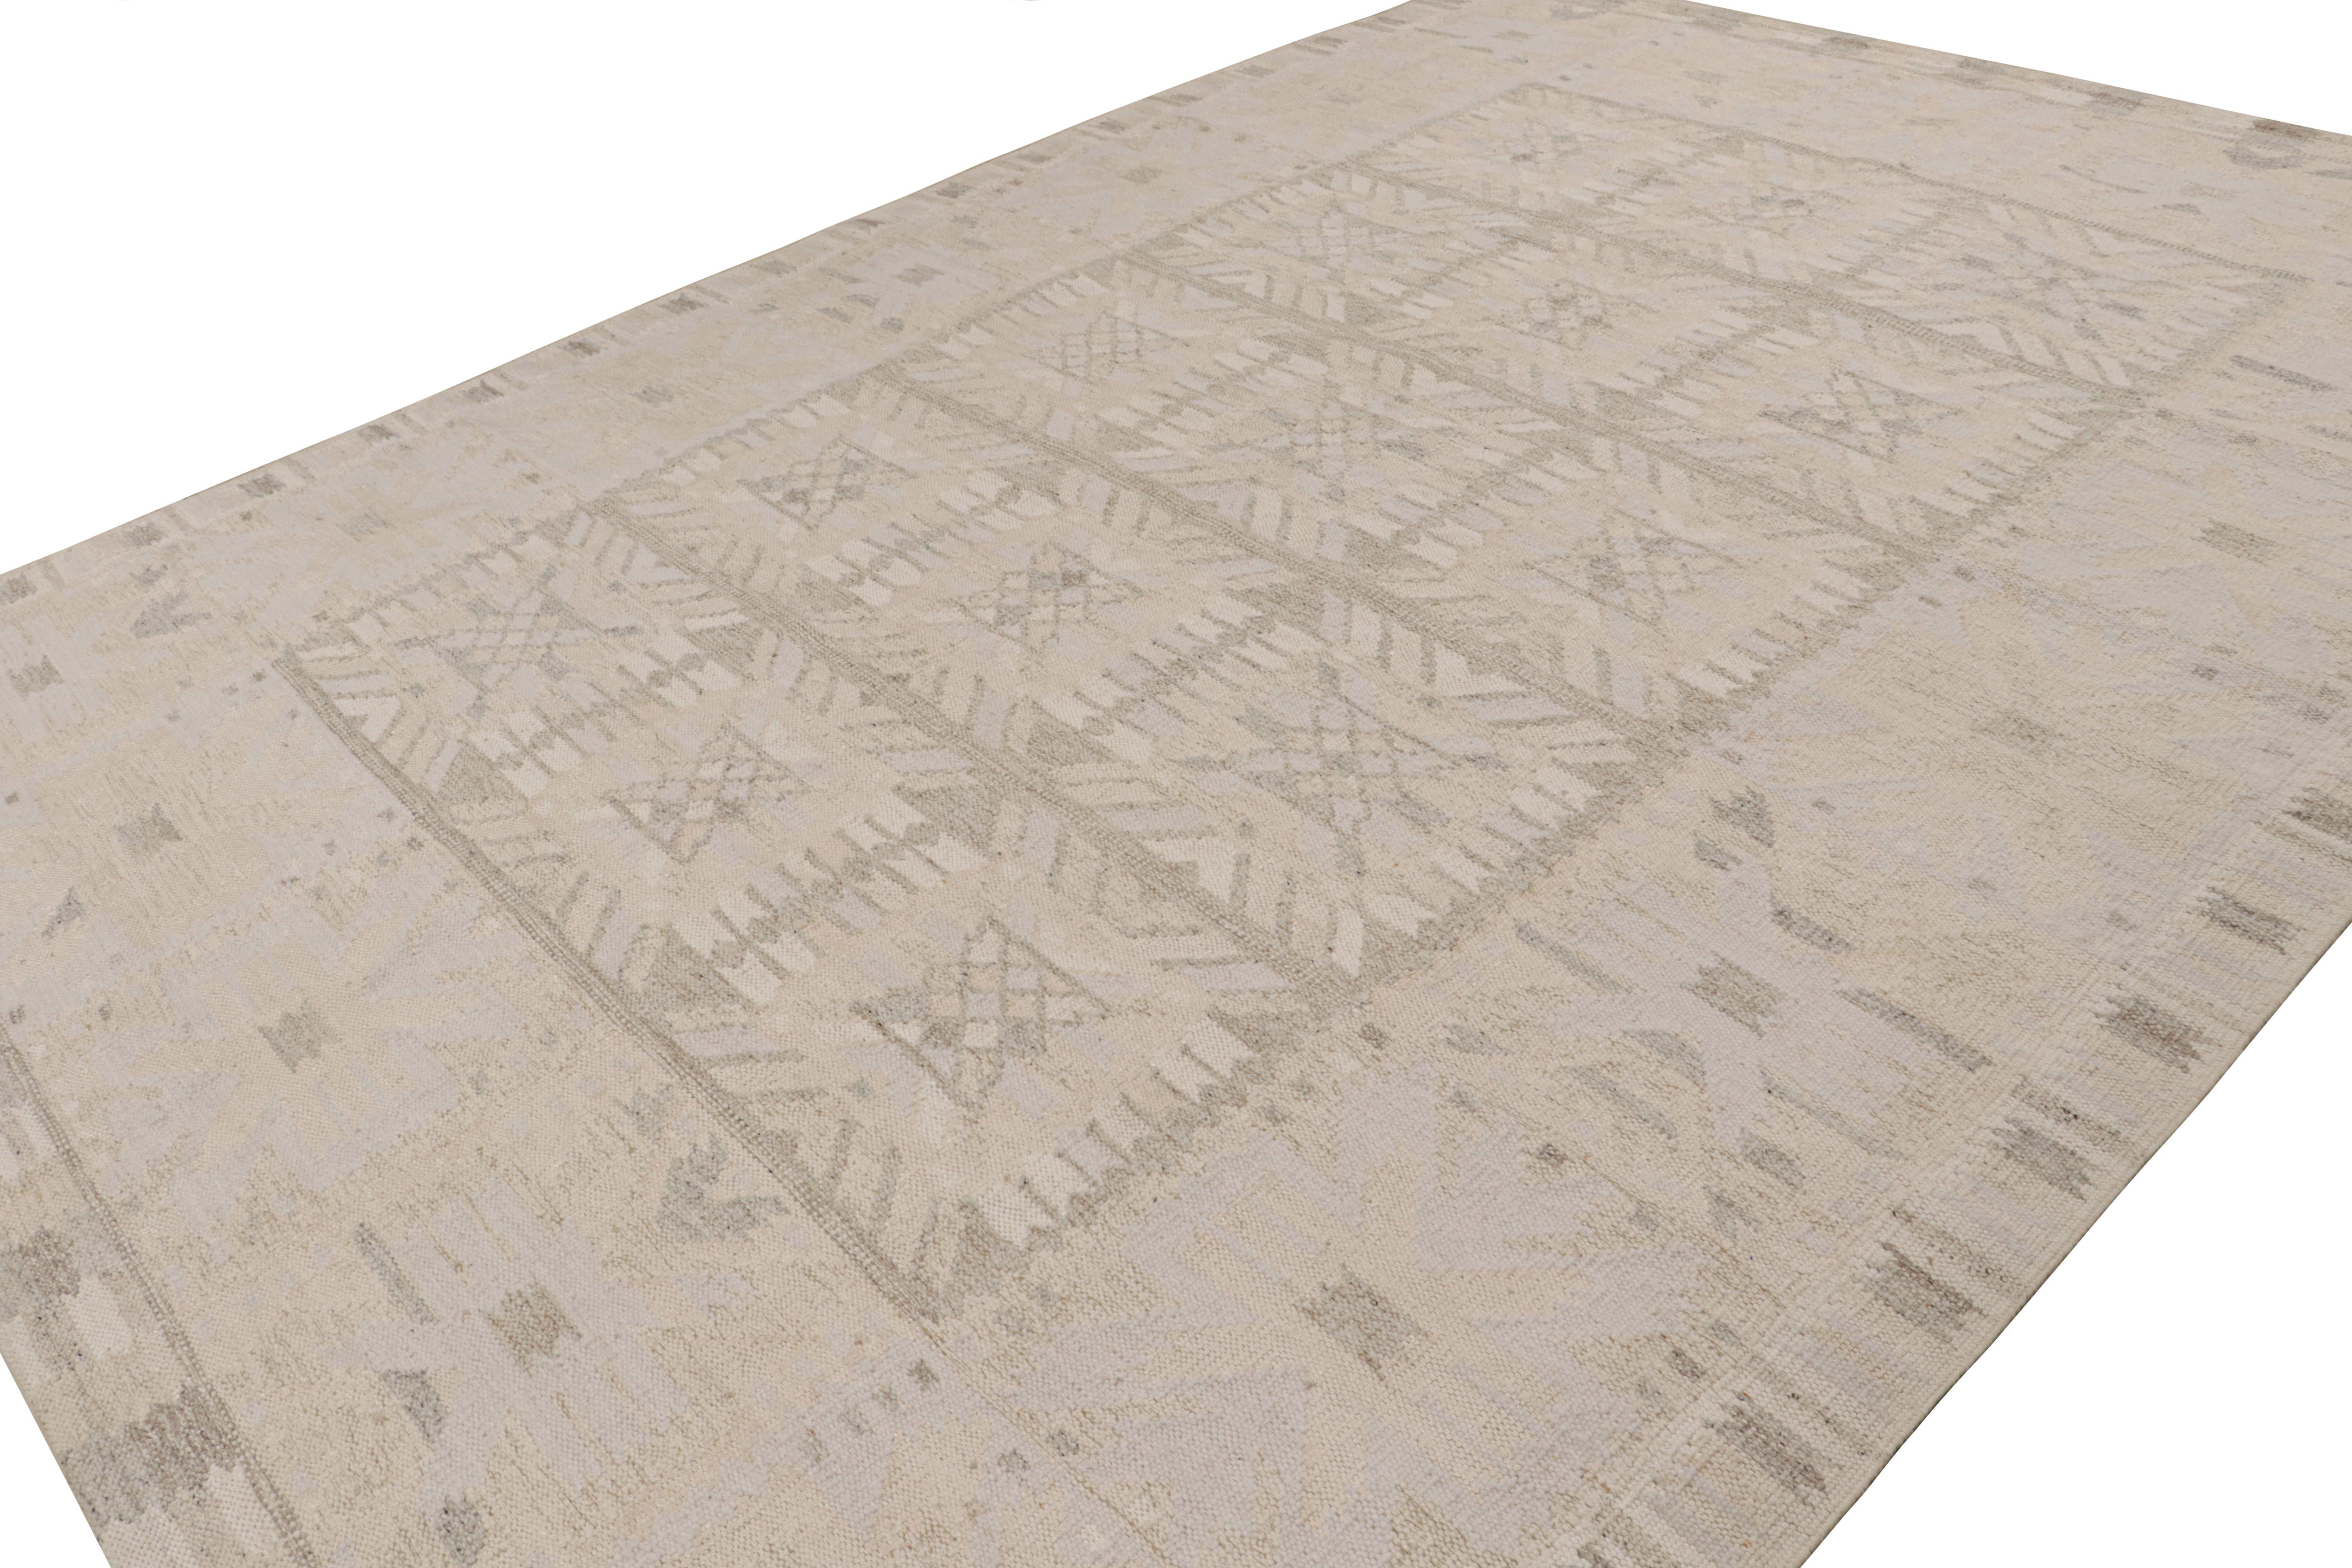 Dieser 10x14 große Kilim-Teppich stammt aus der Flachgewebelinie der skandinavischen Teppichkollektion von Rug & Kilim. Das aus Wolle, Baumwolle und natürlichen Garnen handgewebte Design ist eine moderne Interpretation der Teppiche Rollakan und Rya